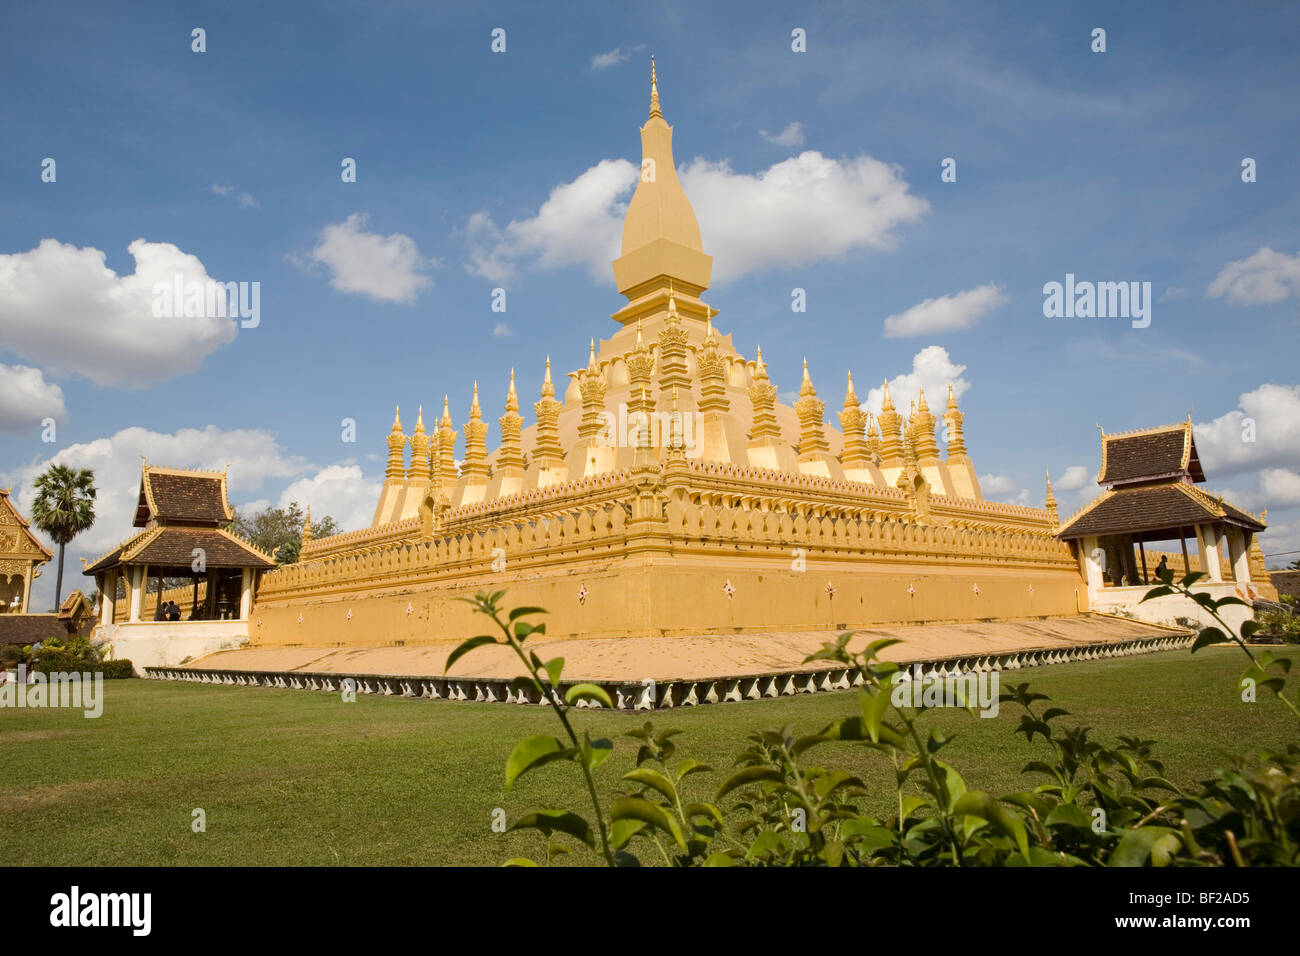 Buddhistische Stupa Pha, die Luang unter blauem Himmel, Nationalsymbol und religiöse Monument in Vientiane, der Hauptstadt von Laos Stockfoto